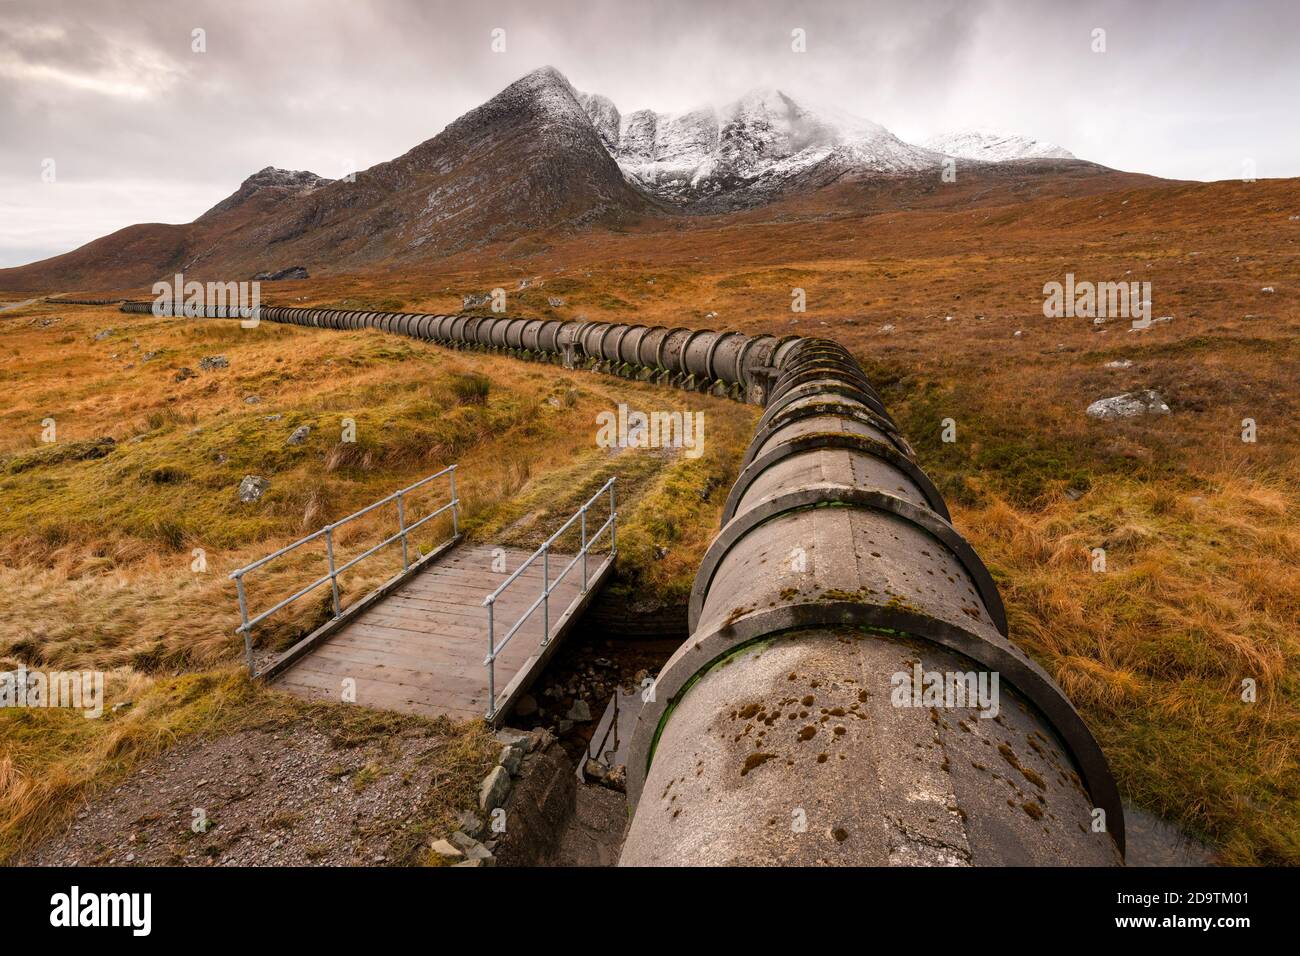 Tubería / acueducto de hormigón original que lleva agua al lago Fannich, Highland Scotland, como parte del esquema hidroeléctrico en esa zona. Foto de stock